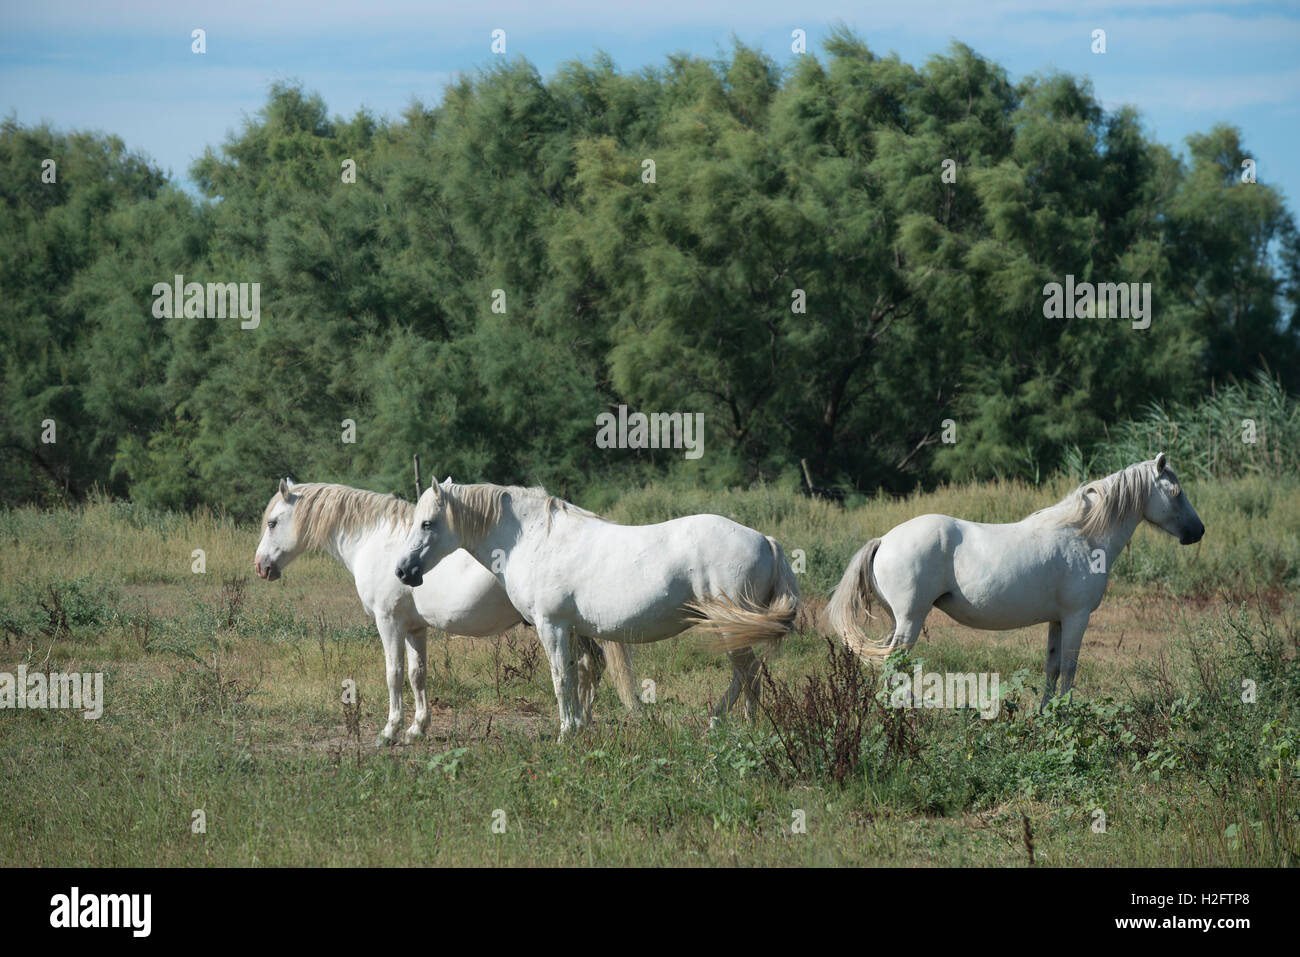 Trois chevaux camargue, indigènes de la région de la Camargue, dans le sud de la France Banque D'Images